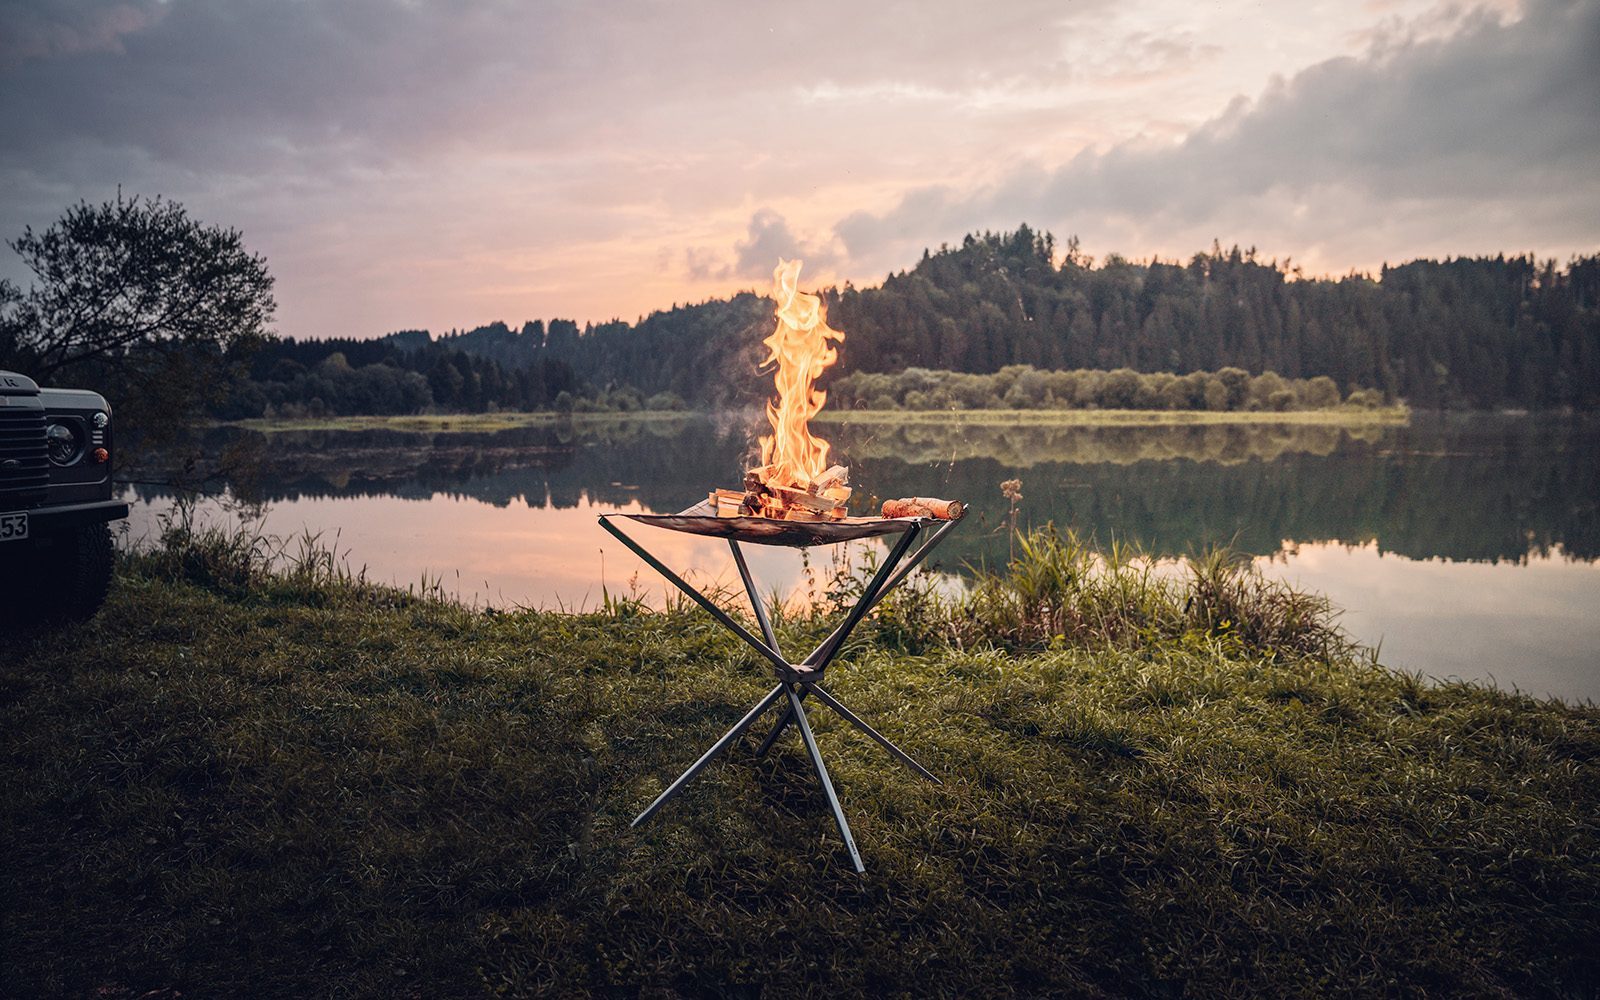 Das in der Natur aufgestellte Feuernetz im Einsatz mit brennendem Holz darauf und einer stimmungsvollen Aussicht auf ein stilles Gewässer mit Spiegelung der dichtbewachsenen Landschaft im Hintergrund.